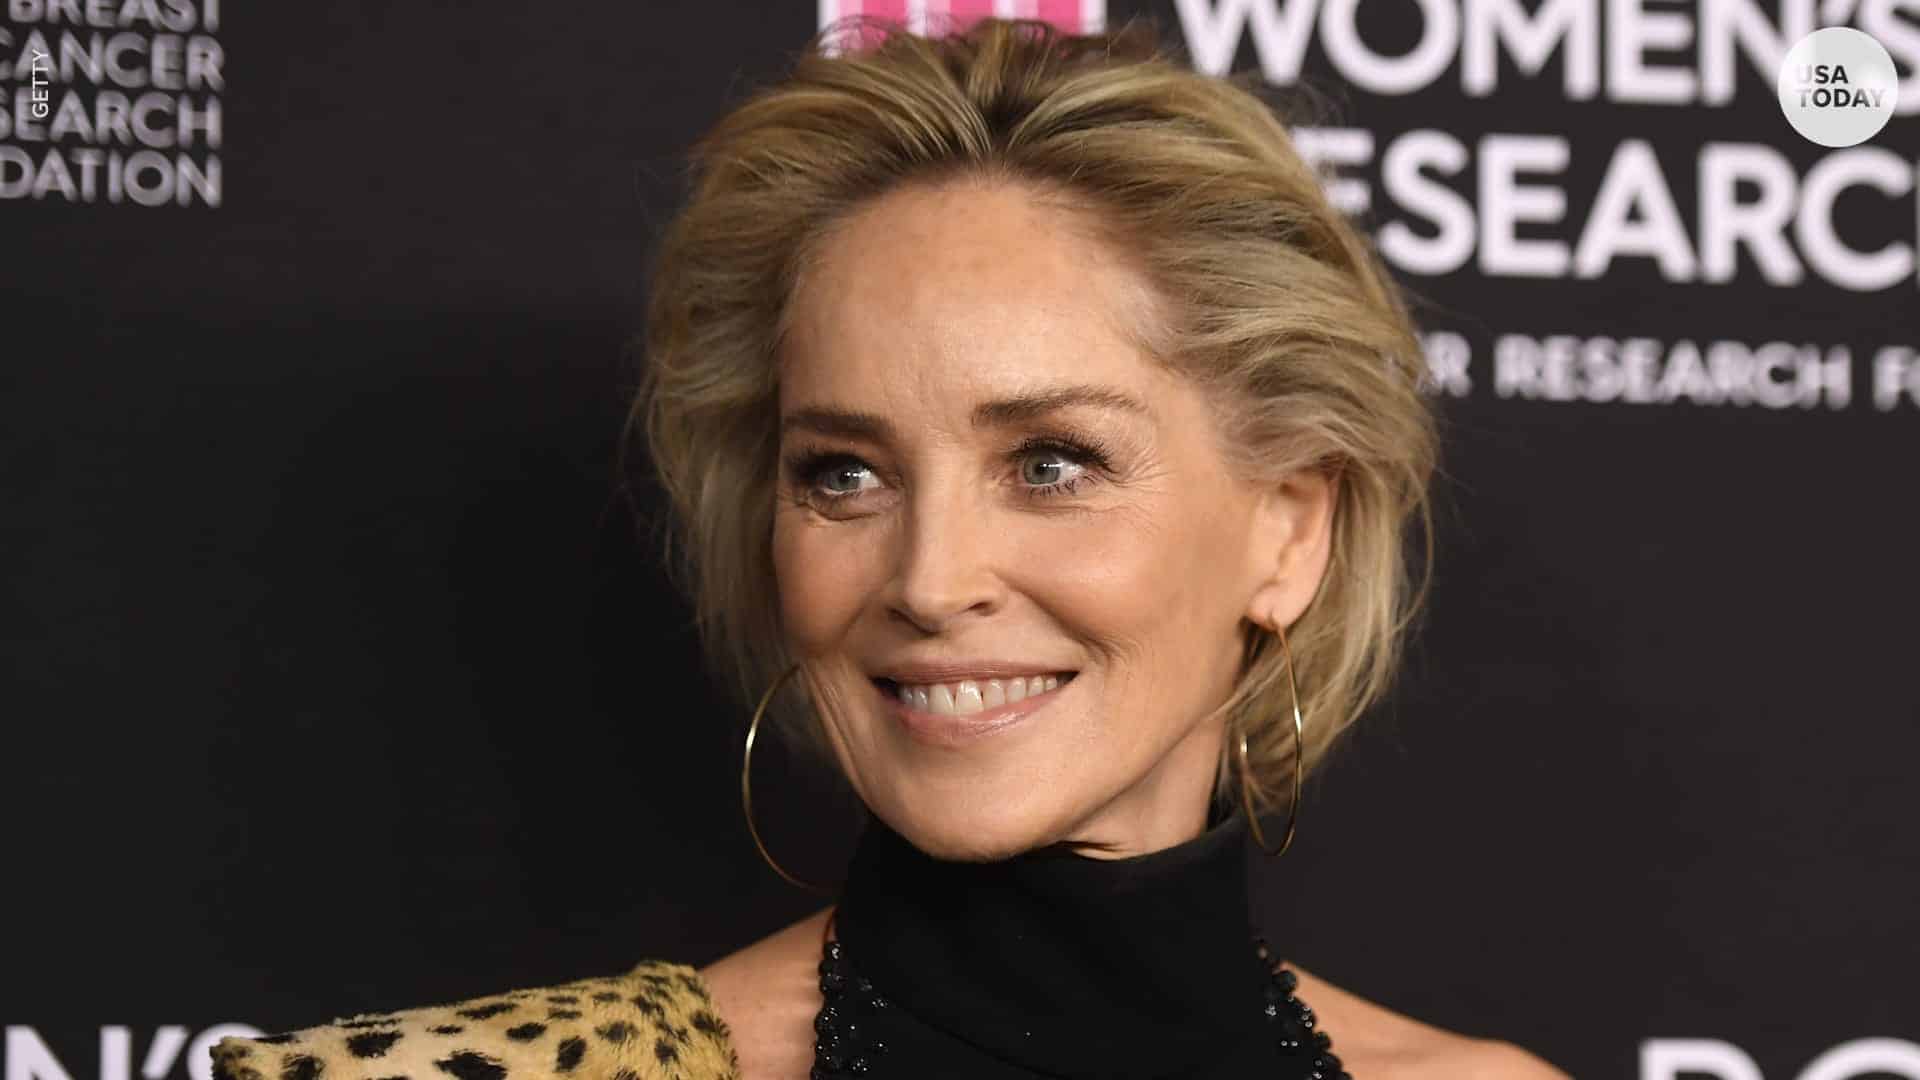 Sharon Stone e la malattia che le ha fatto vedere la morte in faccia: la splendida attrice racconta il suo “fulmine a ciel sereno”